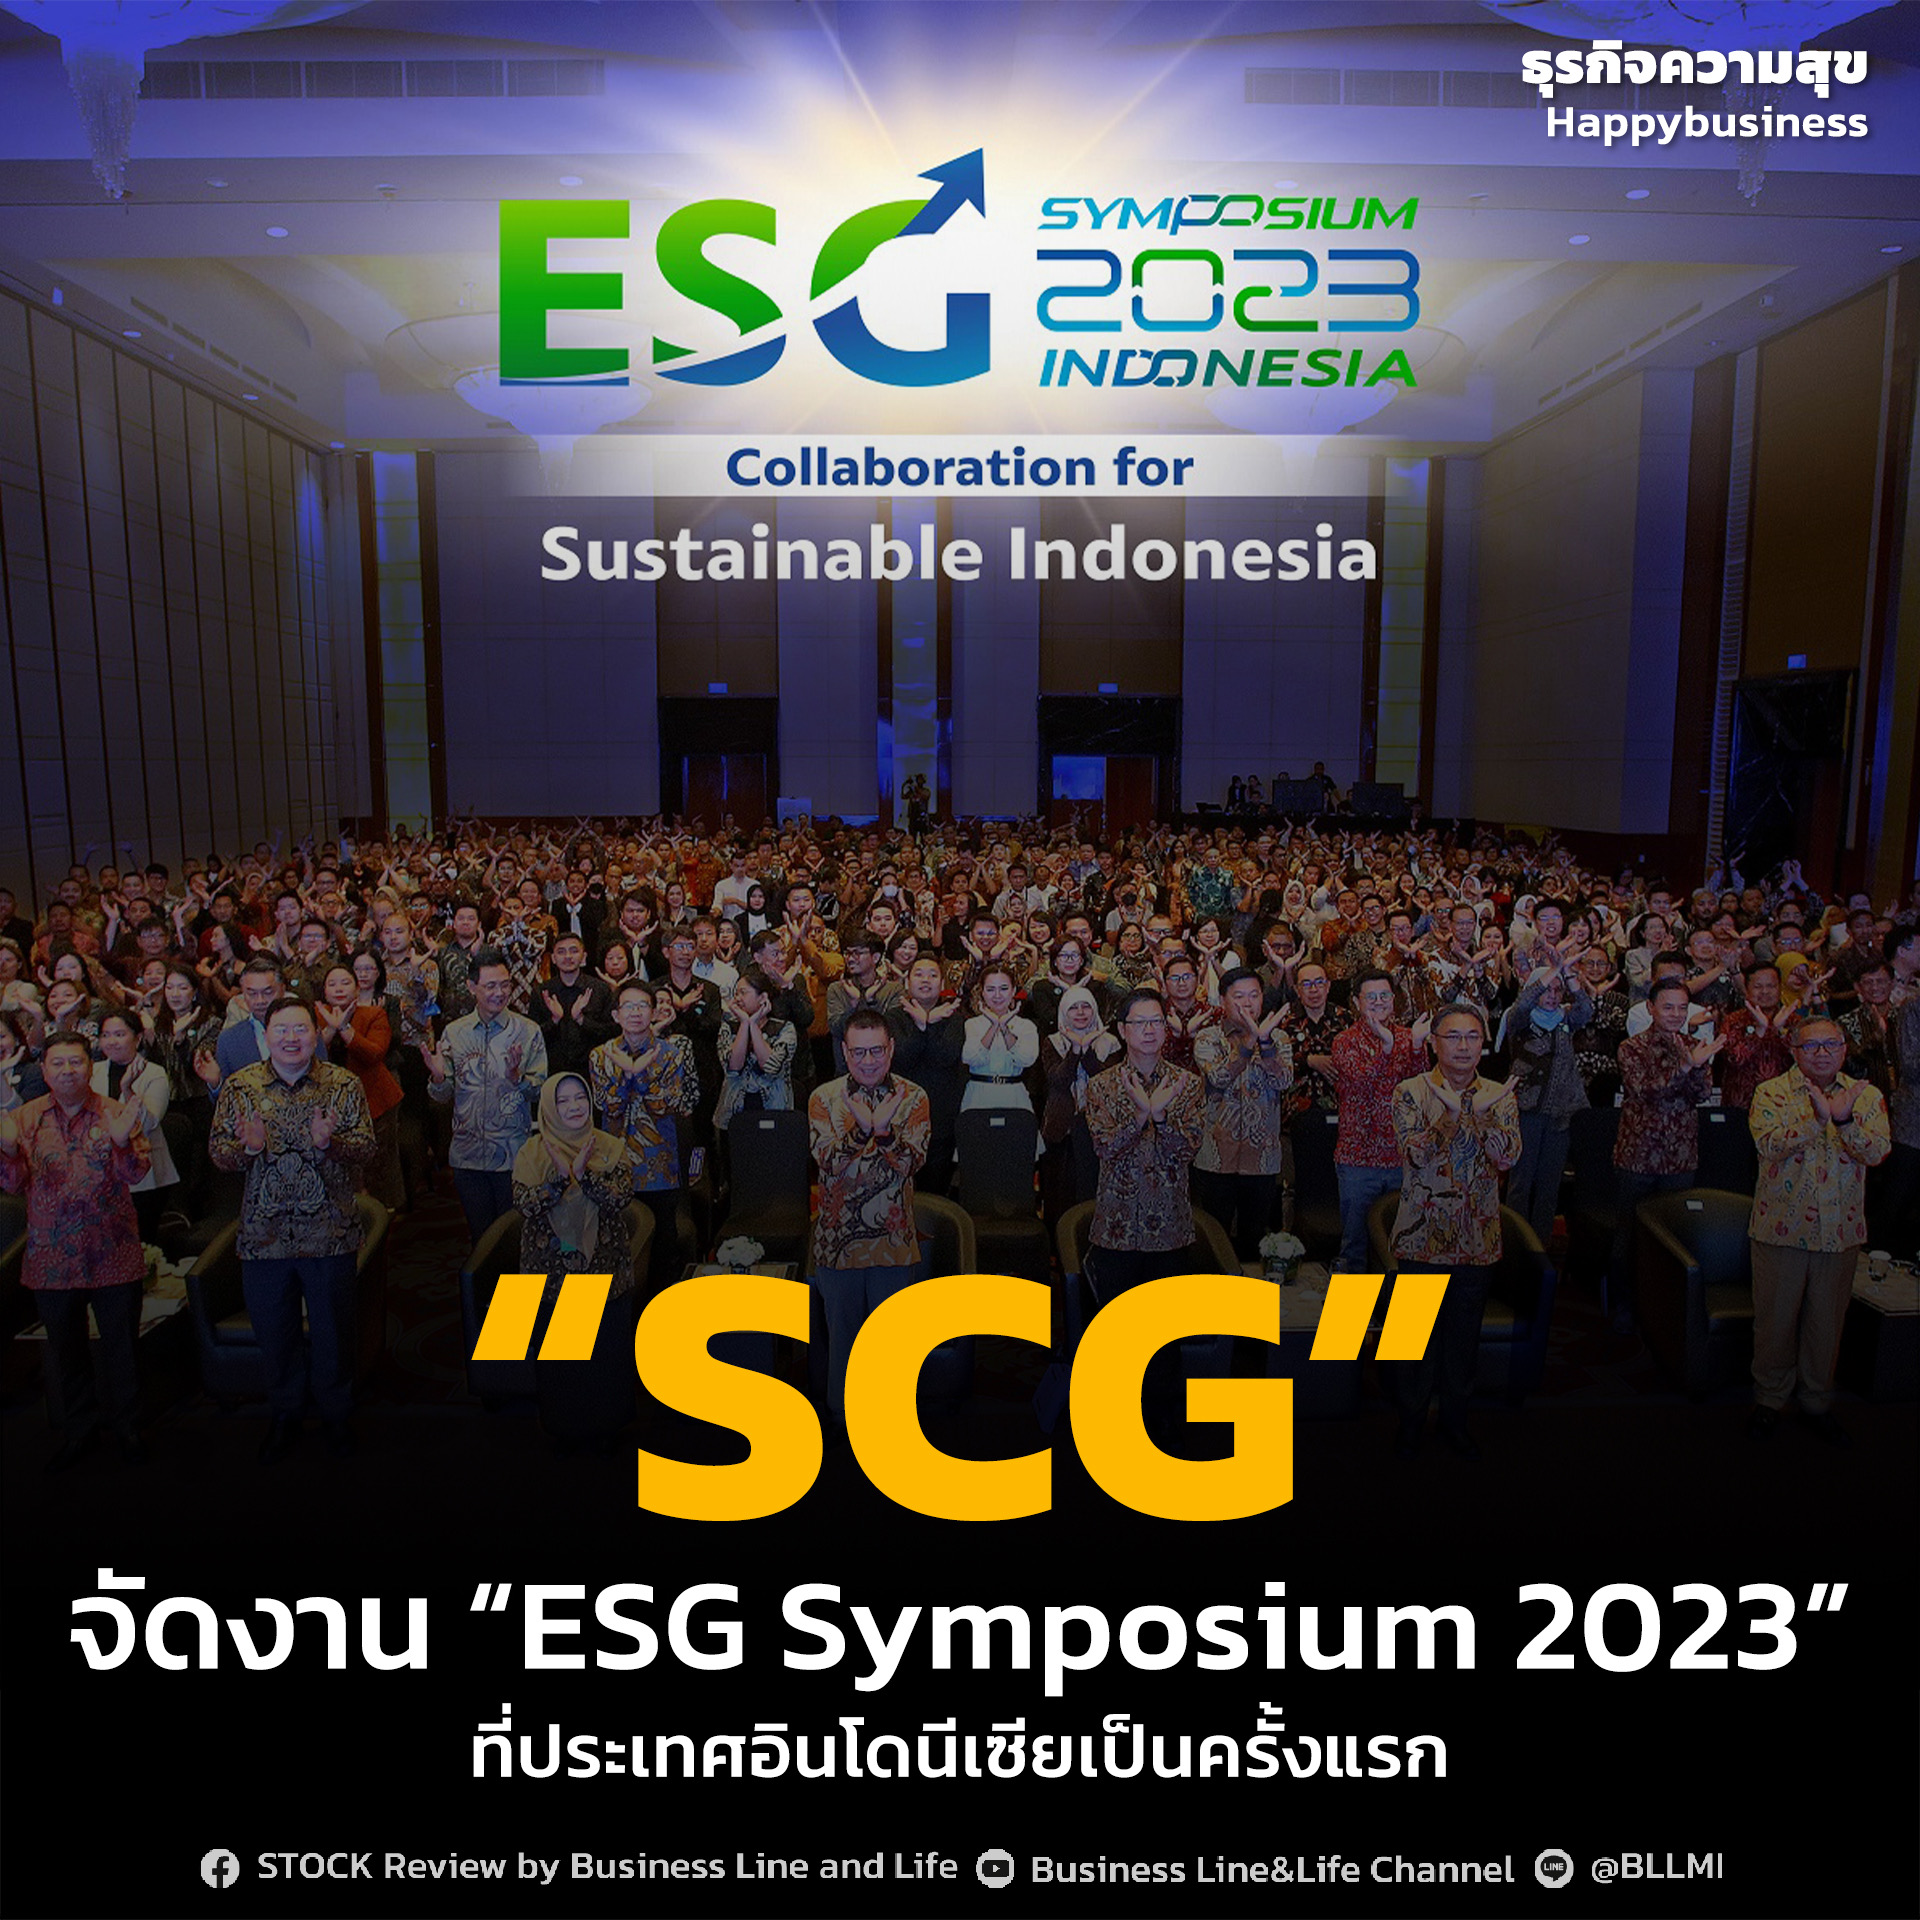 “SCG” จัดงาน “ESG Symposium 2023” ที่ประเทศอินโดนีเซียเป็นครั้งแรก